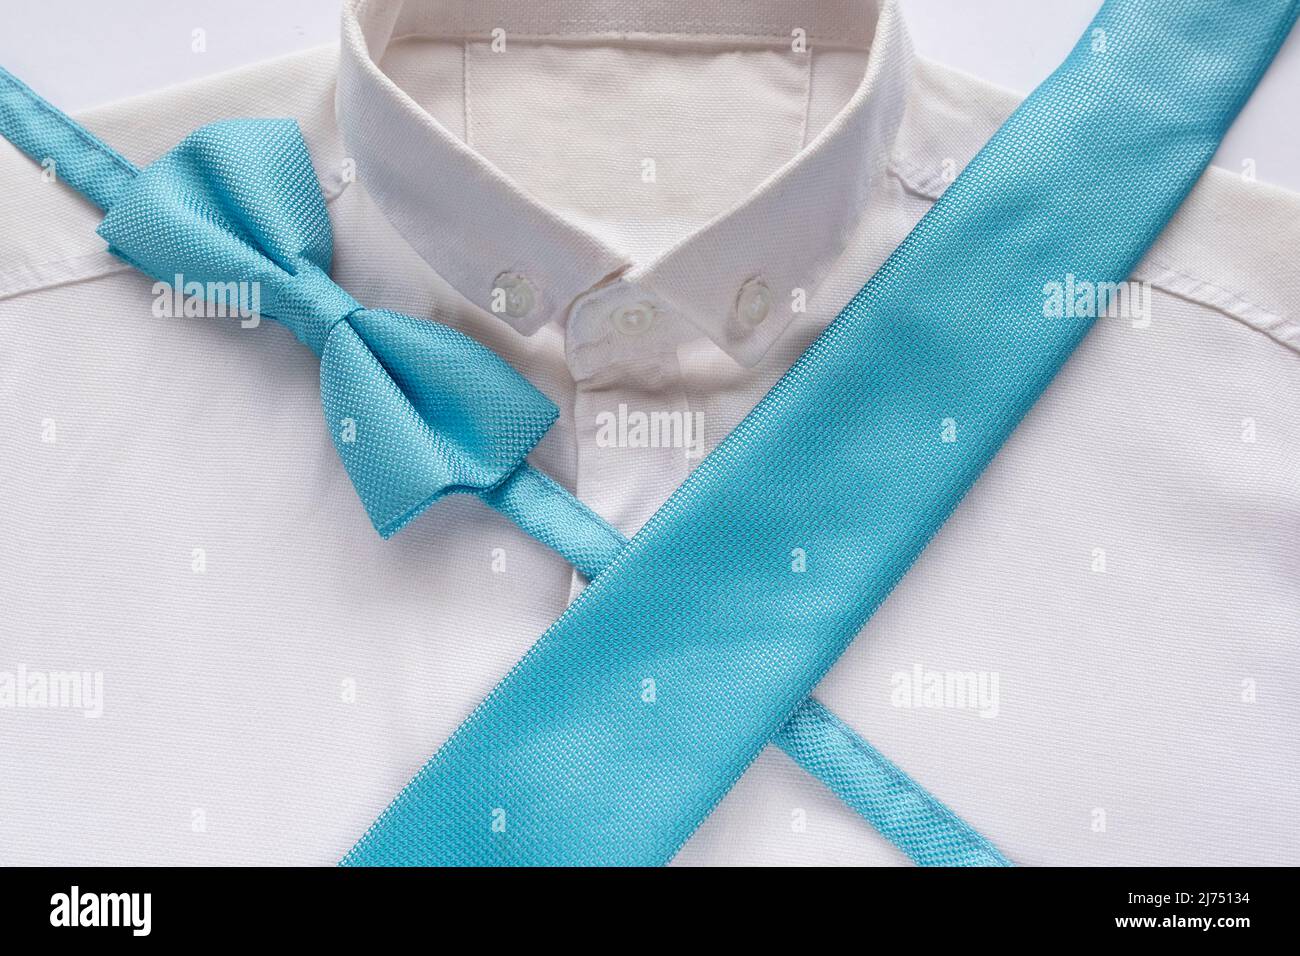 Cravate bleue et noeud papillon sur chemise blanche, concept de mode hommes, accessoires de couleur bleue, idée de vêtements hommes, vue assise Banque D'Images